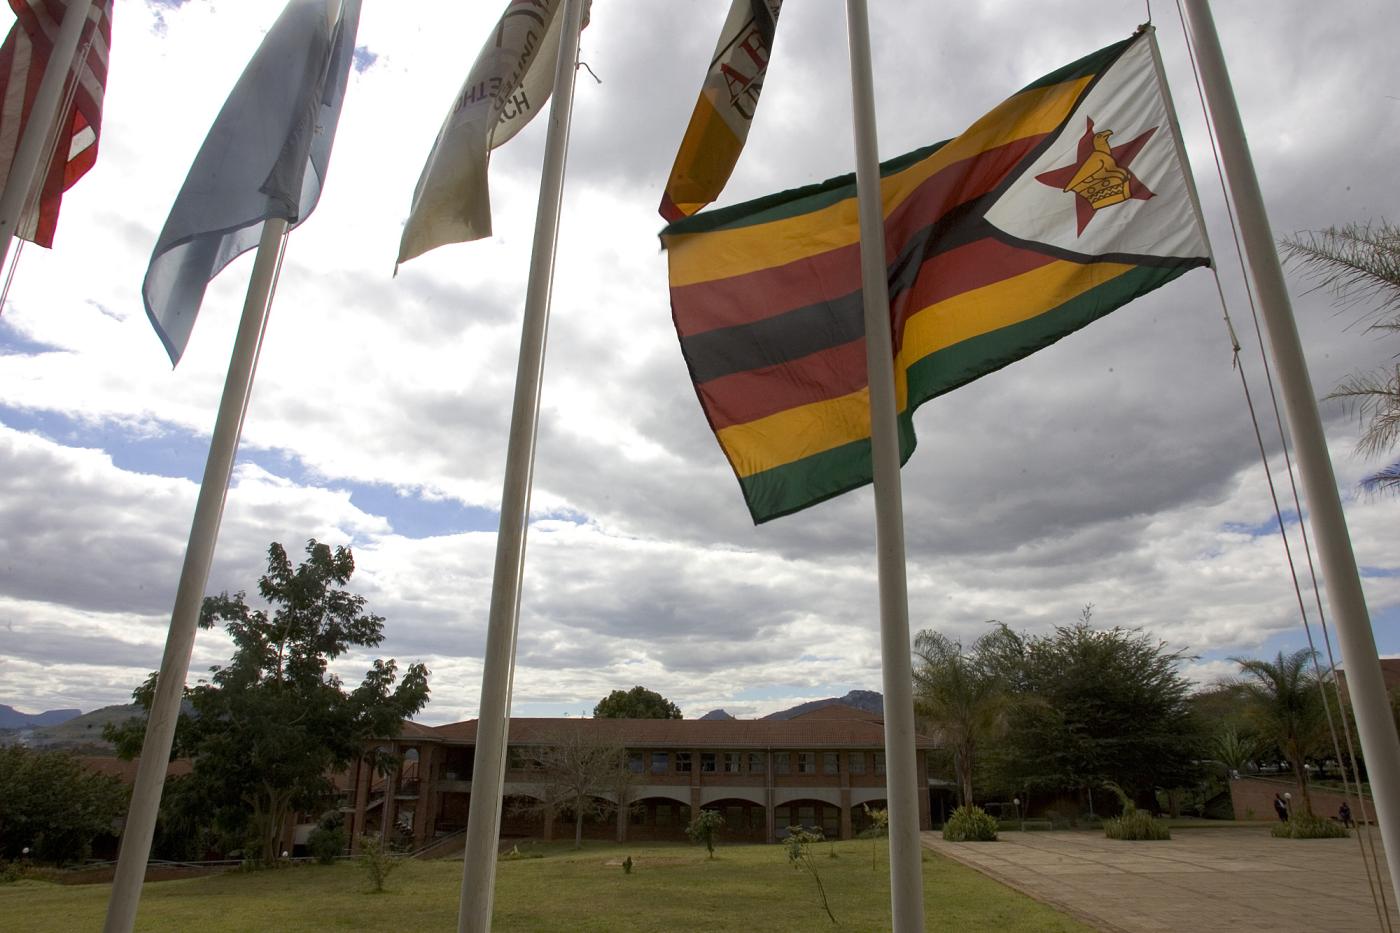 flag zimbabwe